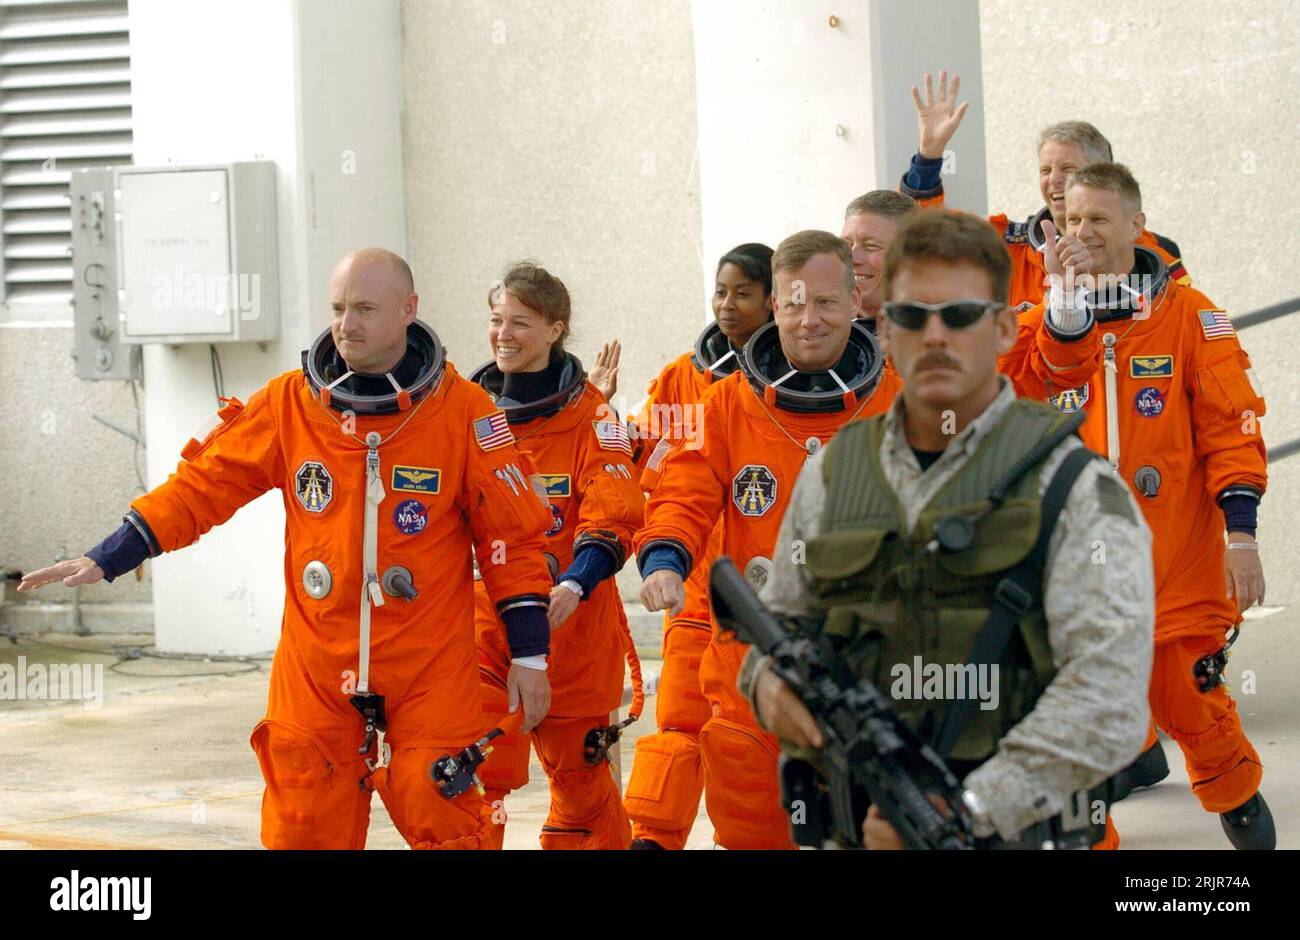 Bildnummer: 51315487  Datum: 02.07.2006  Copyright: imago/Xinhua Bewaffneter Soldat schützt die Besatzung der Discovery auf dem Weg zum Space Shuttle der Mission STS-121 - Pilot Mark Kelly (vorn li., USA), Kommandant Steven Lindsay (vorn re., USA), Missionsspezialistin Lisa Nowak (2.Reihe li., USA) Missionsspezialist Michael Fossum (2.Reihe re., USA), Missionsspezialistin Stephanie Wilson (3.Reihe li., USA), Missionsspezialist Piers Sellers (4.Reihe li., USA) und Thomas Reiter (hinten, GER) verabschieden sich in Cape Canaveral - PUBLICATIONxNOTxINxCHN, Personen; 2006, Cape Canaveral, Presseter Stock Photo